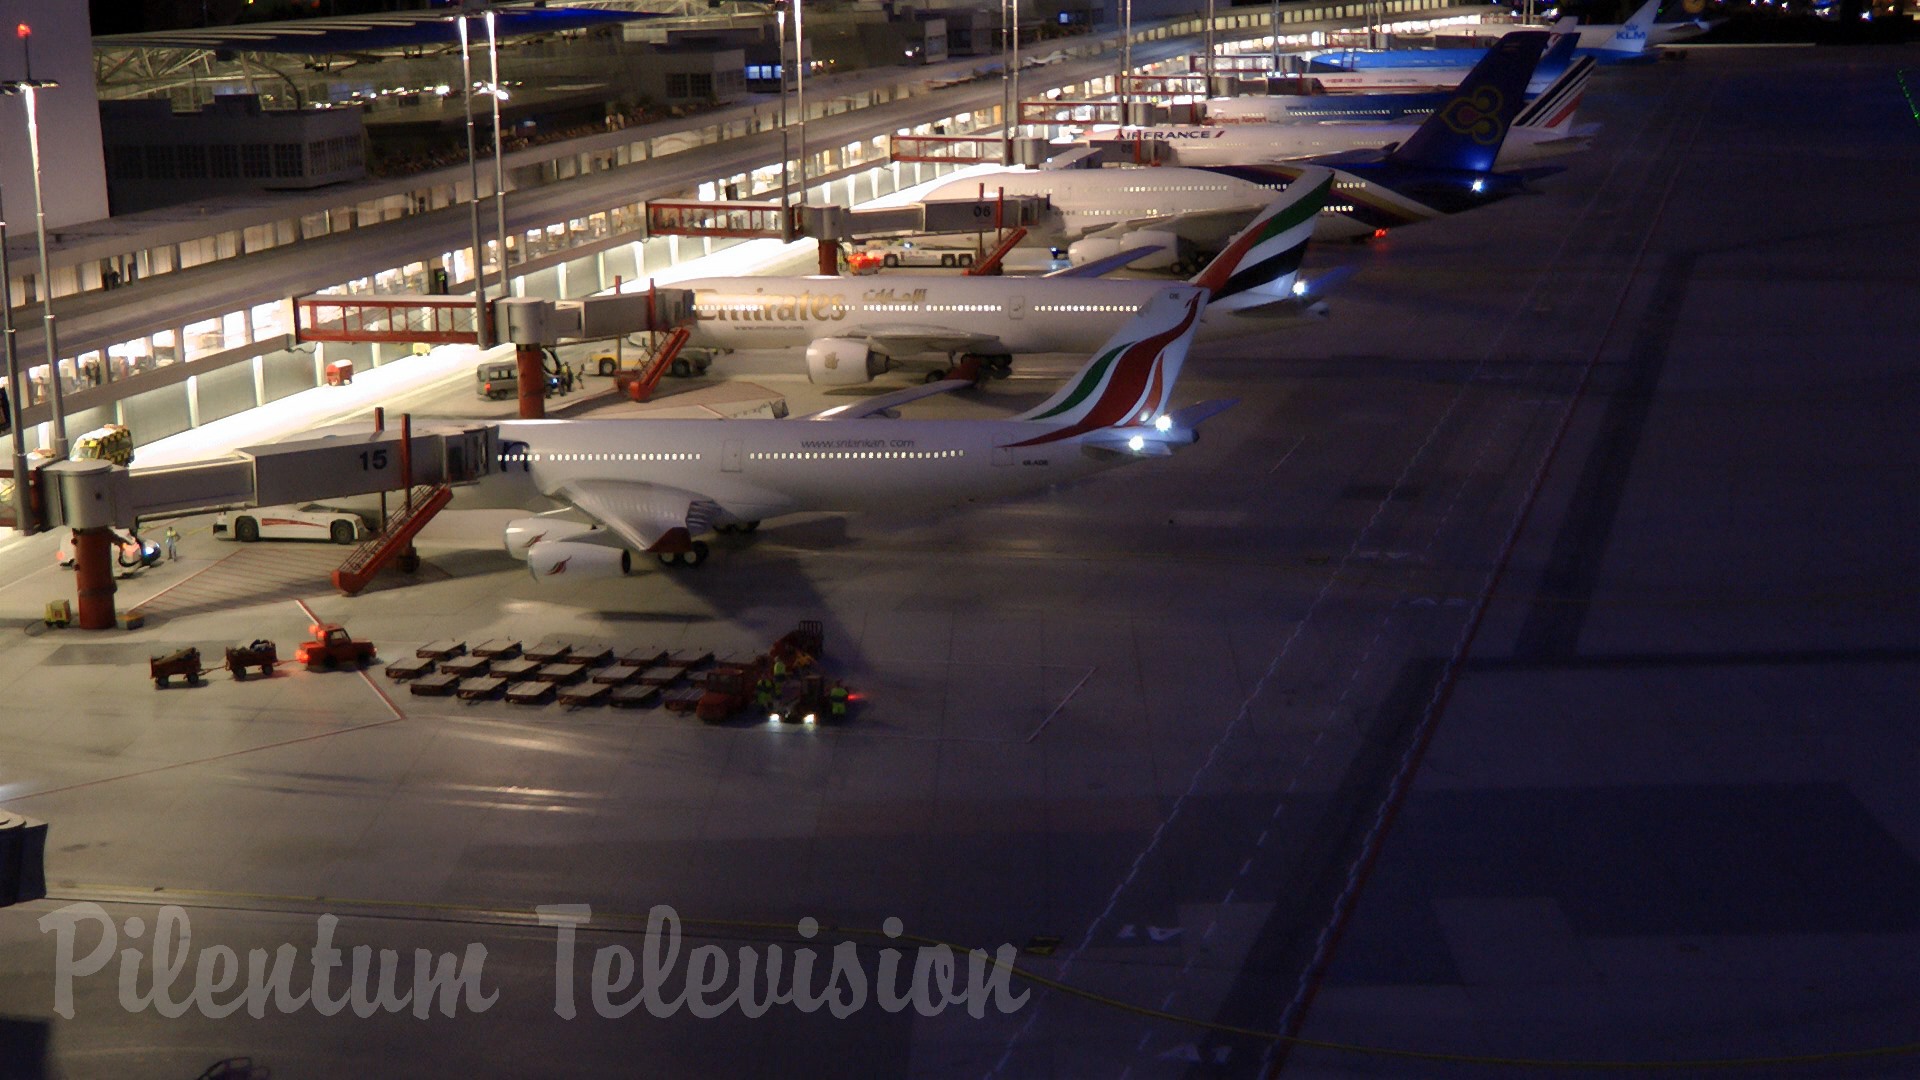 Aeroport miniatural în scară 1/87 - Aerodrom complet funcțional cu decolări și aterizări